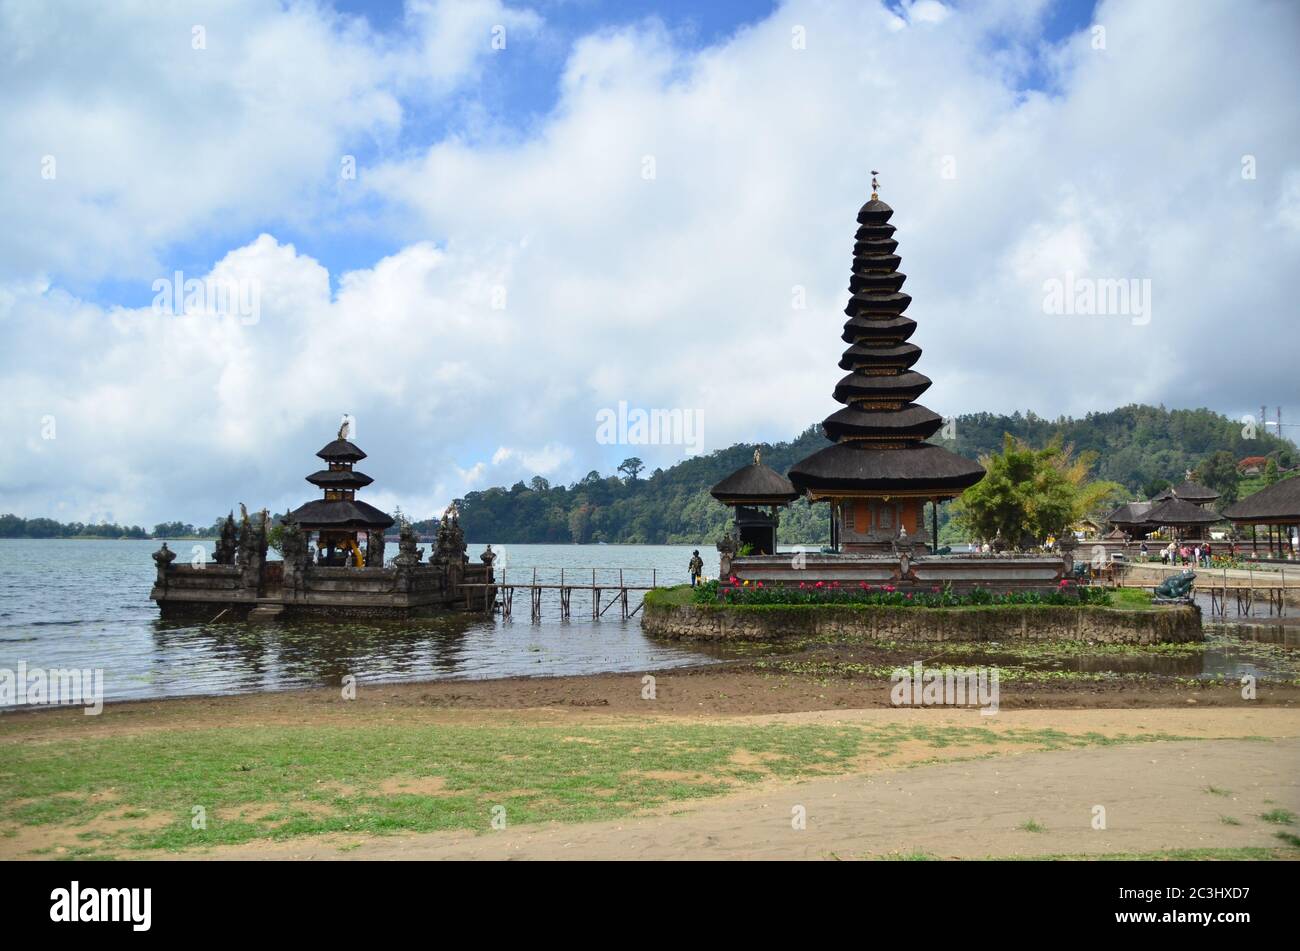 Pura Ulun Danu Beratan est situé sur les rives du lac Beratan à Bali, en Indonésie. Construit en 1663, il s'agit d'un temple hindou majeur de Shivaïte. Banque D'Images